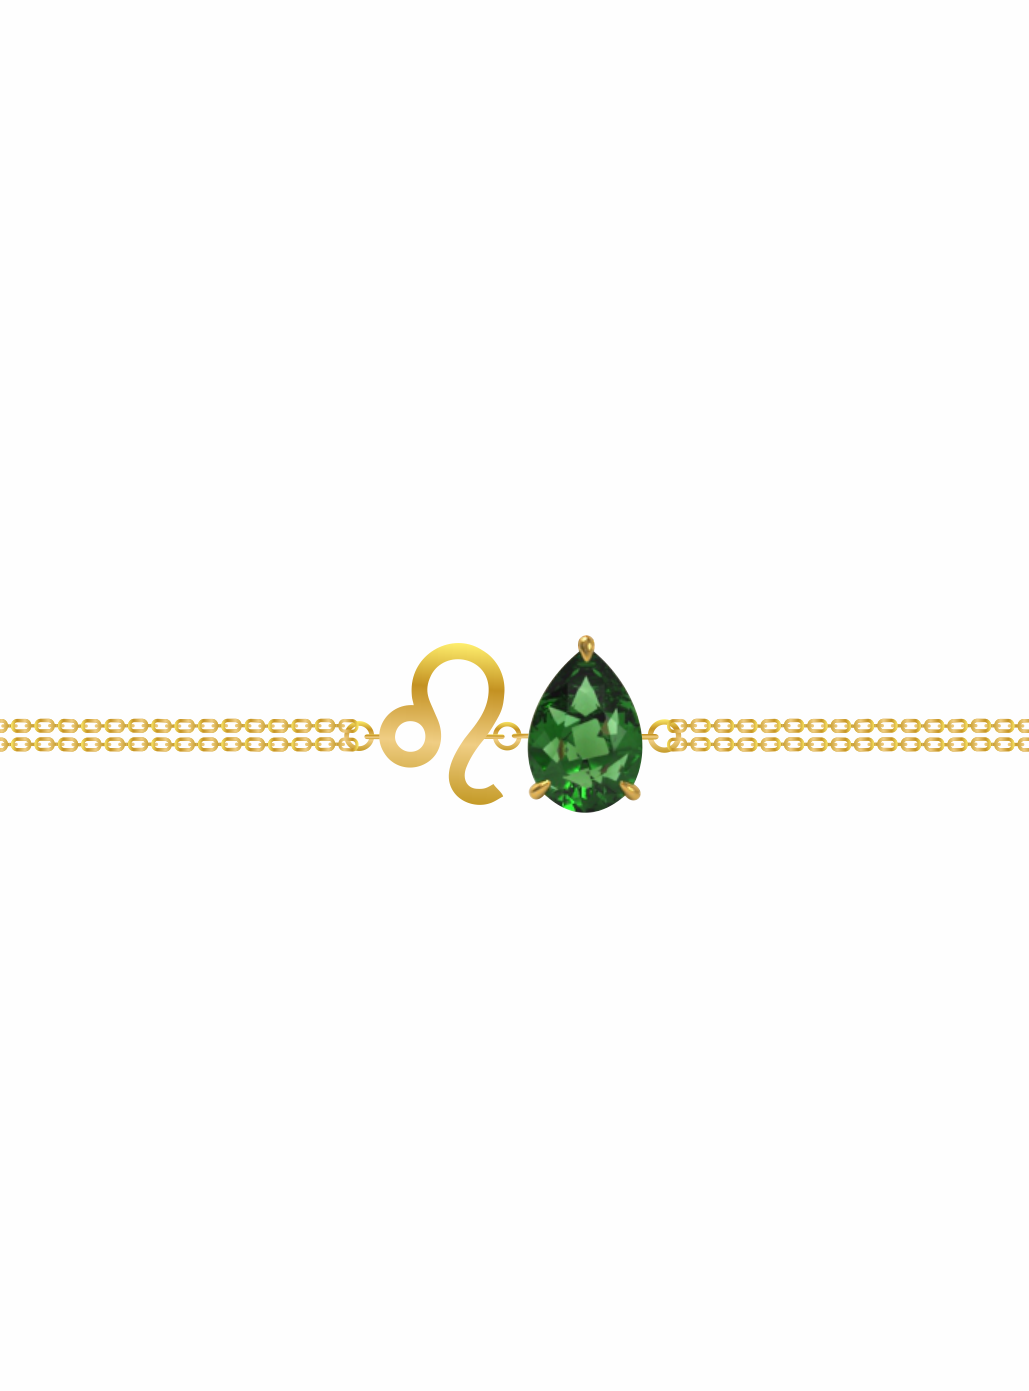 zodiac sign bracelet- leo- gold